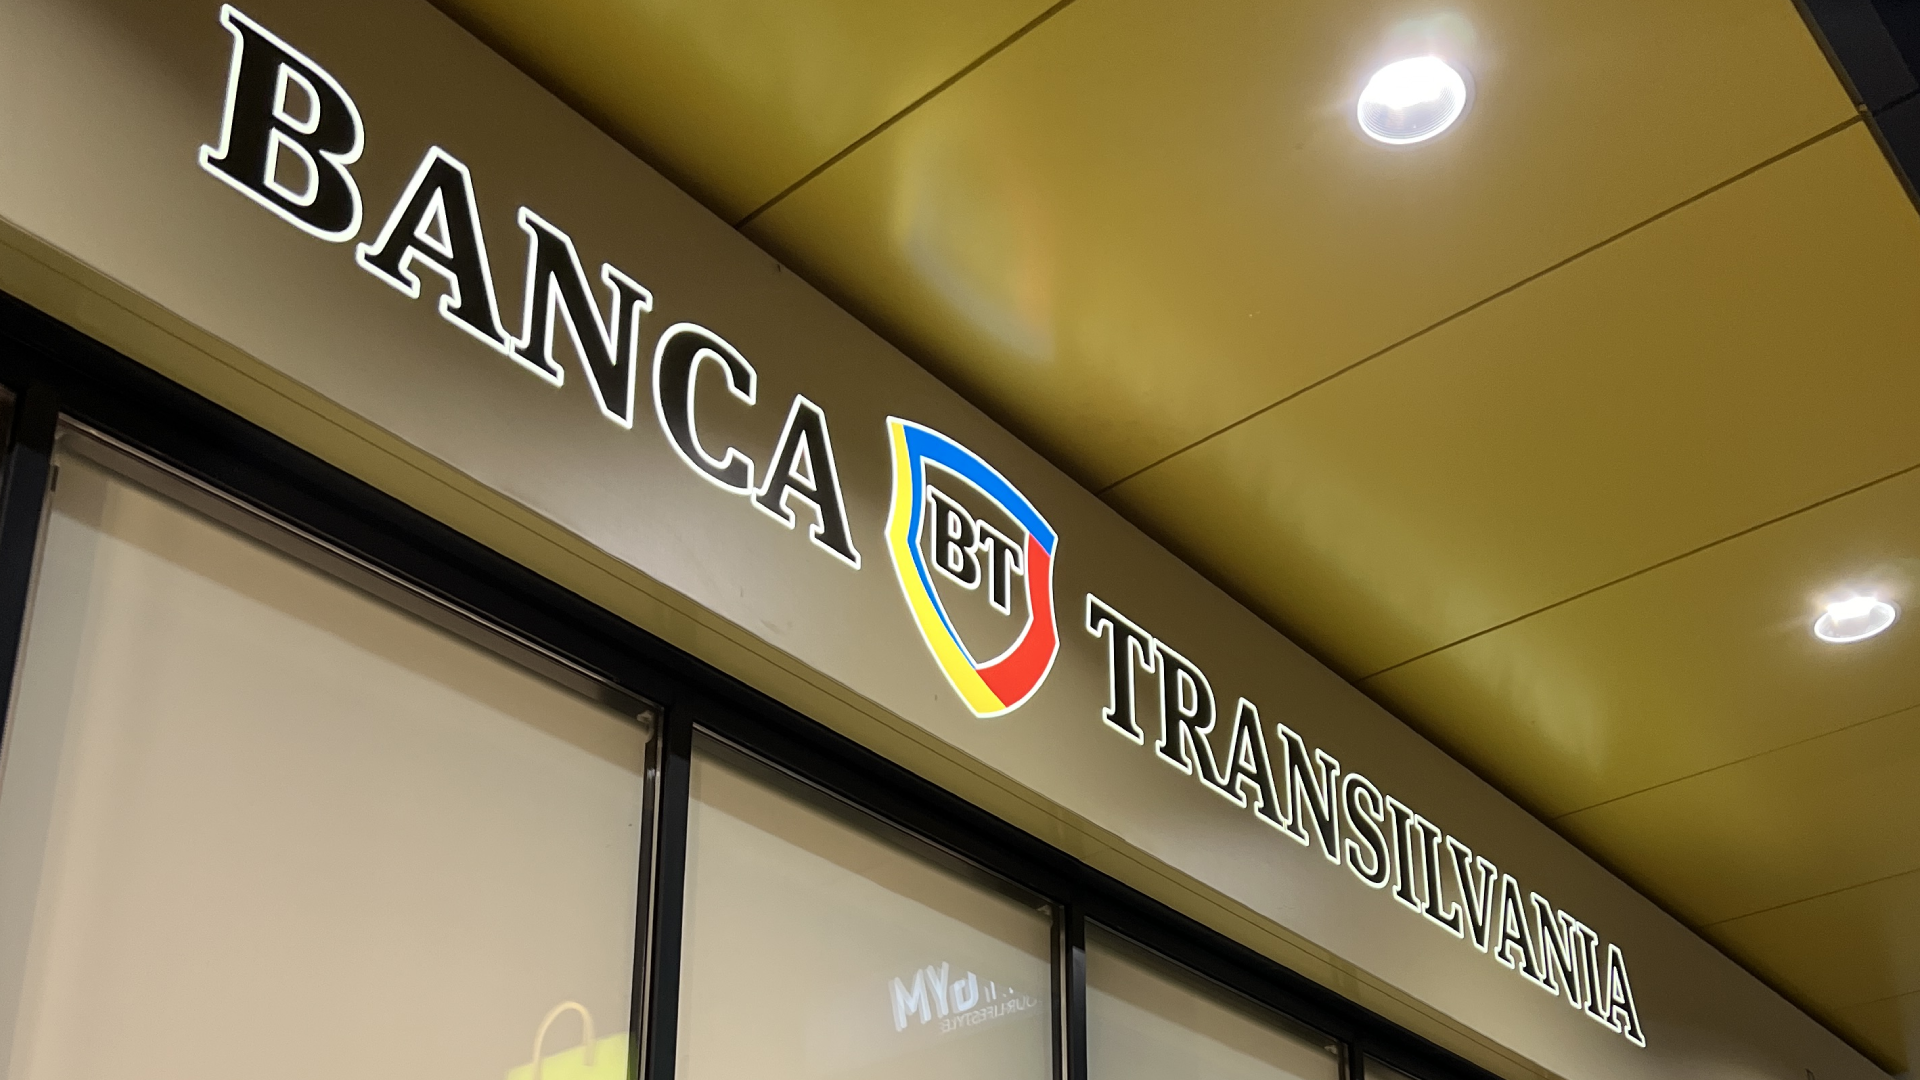 Banca Transilvania, vești crunte pentru români! Prețurile de consum explodează: proiectate să crească cu 9,9% în 2023